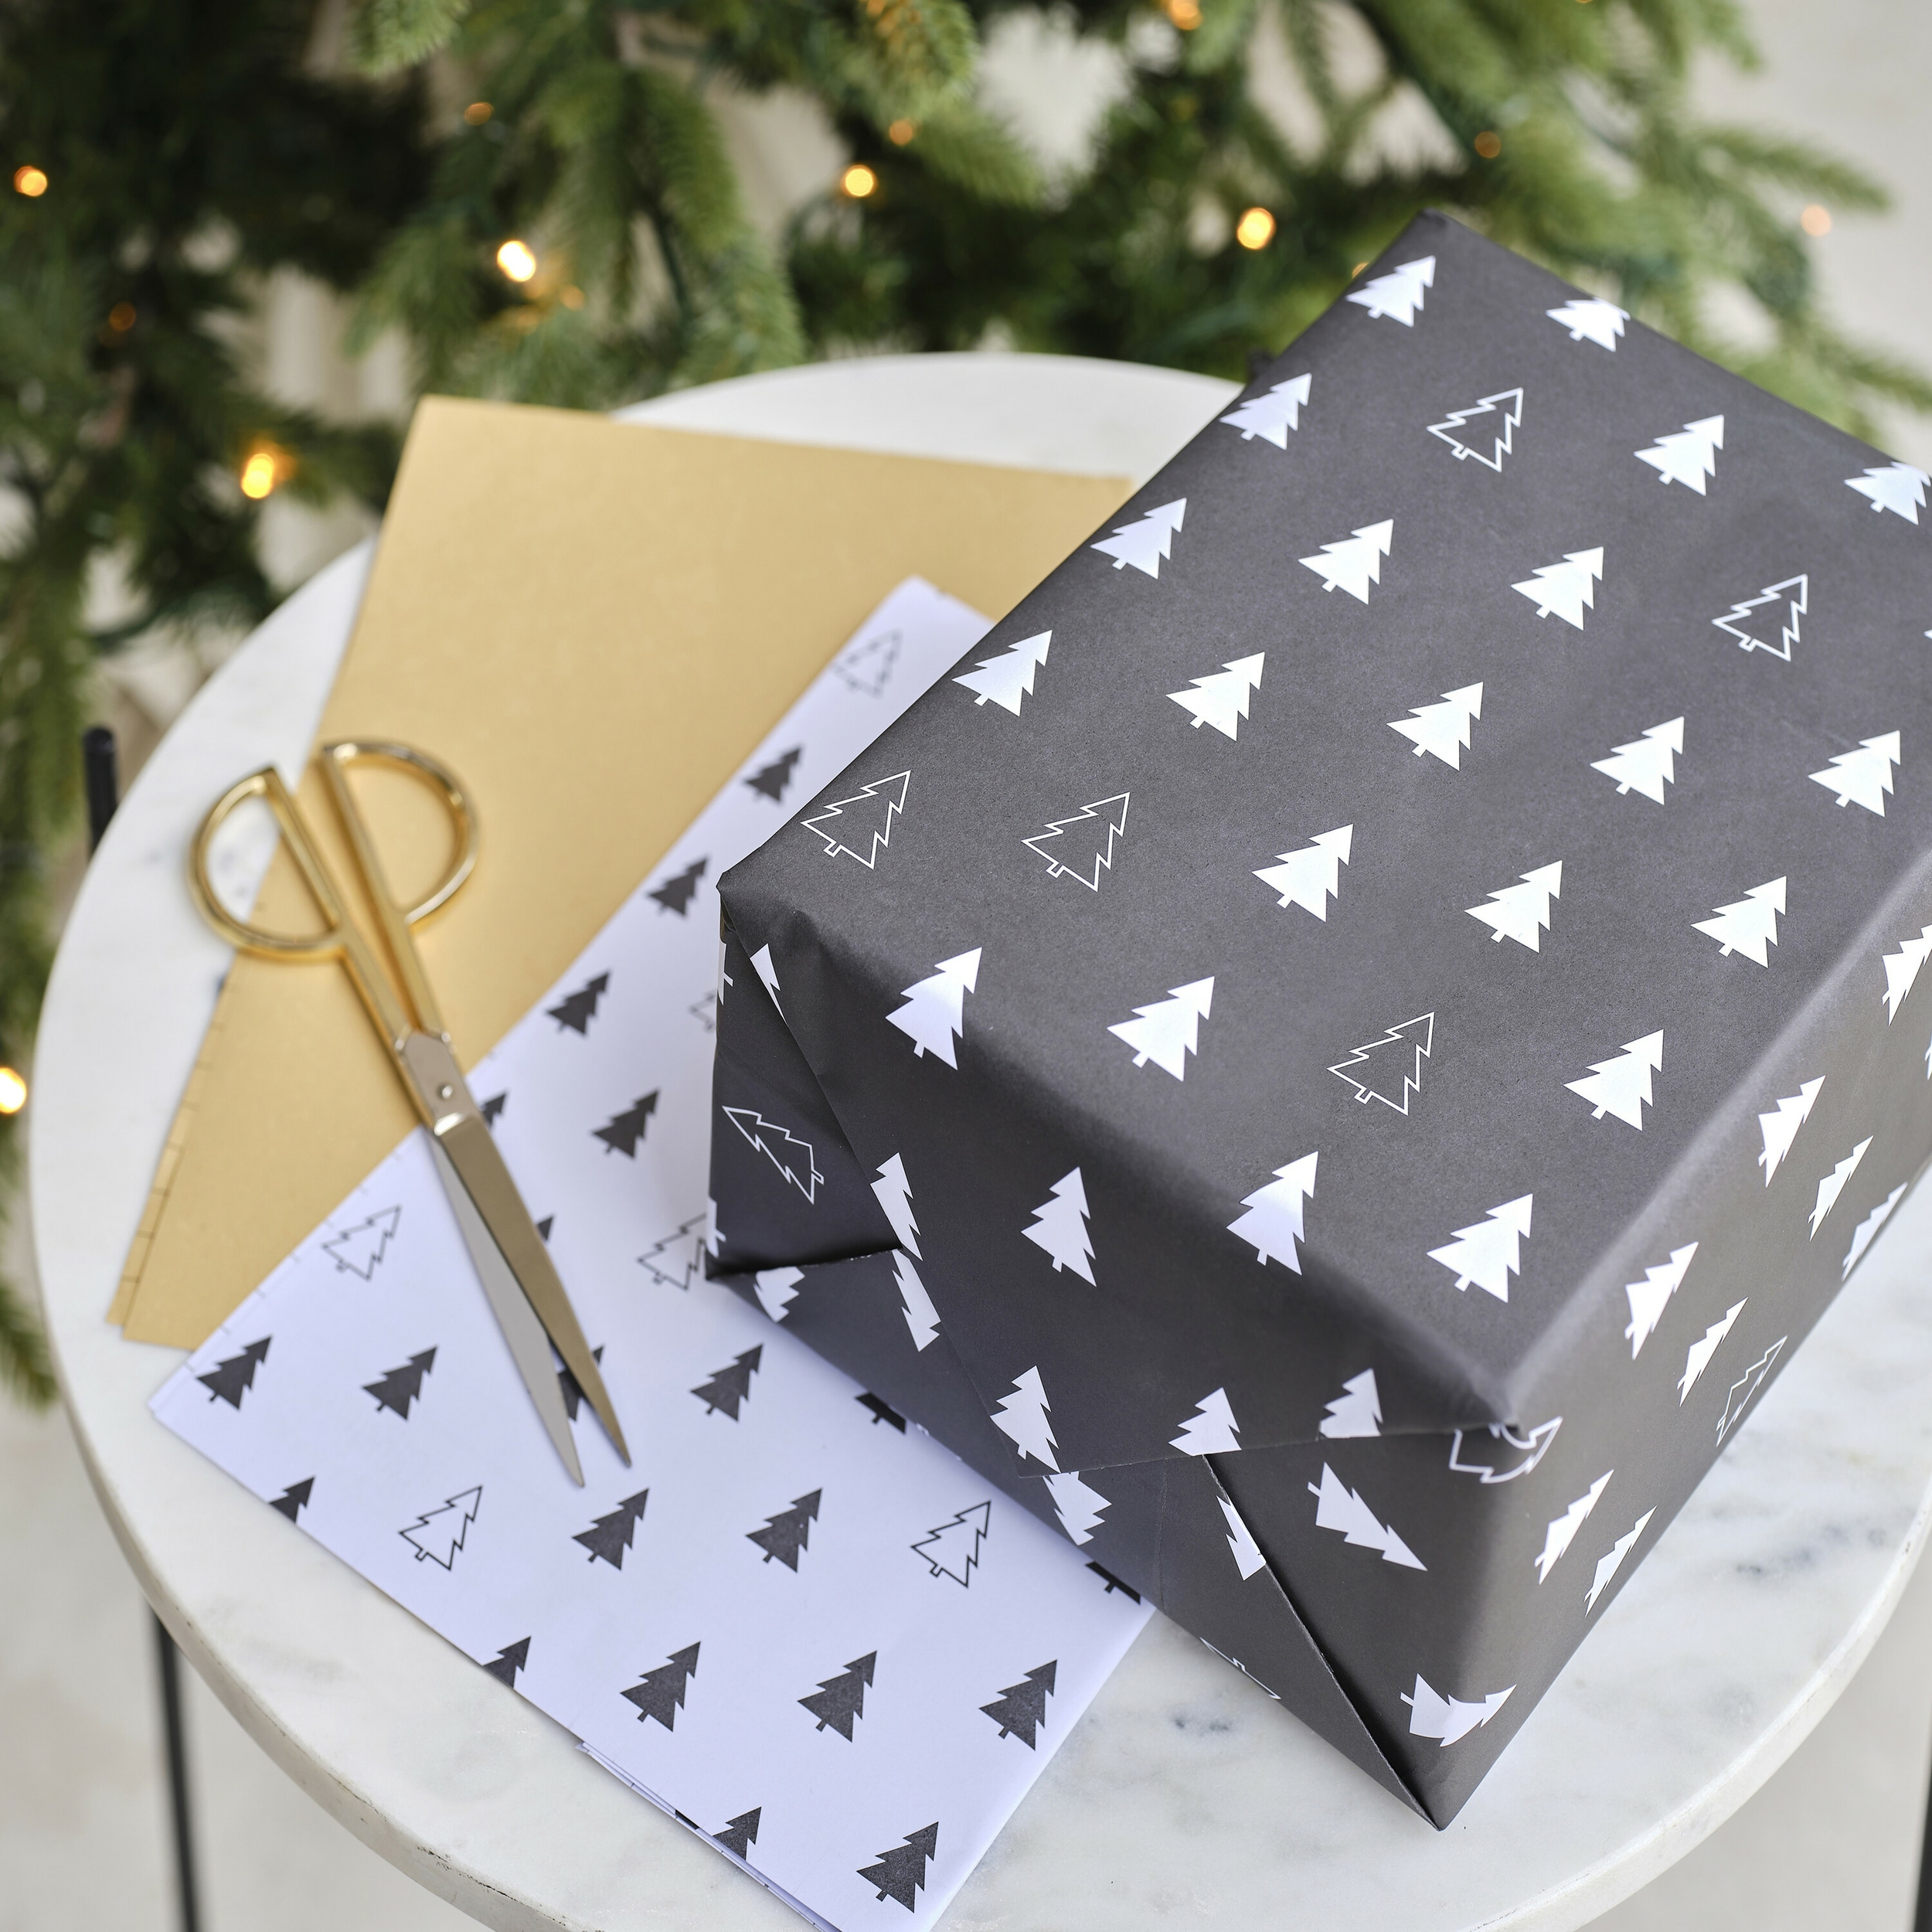 Kit paquet cadeau de Noël traditionnel - Papier cadeau